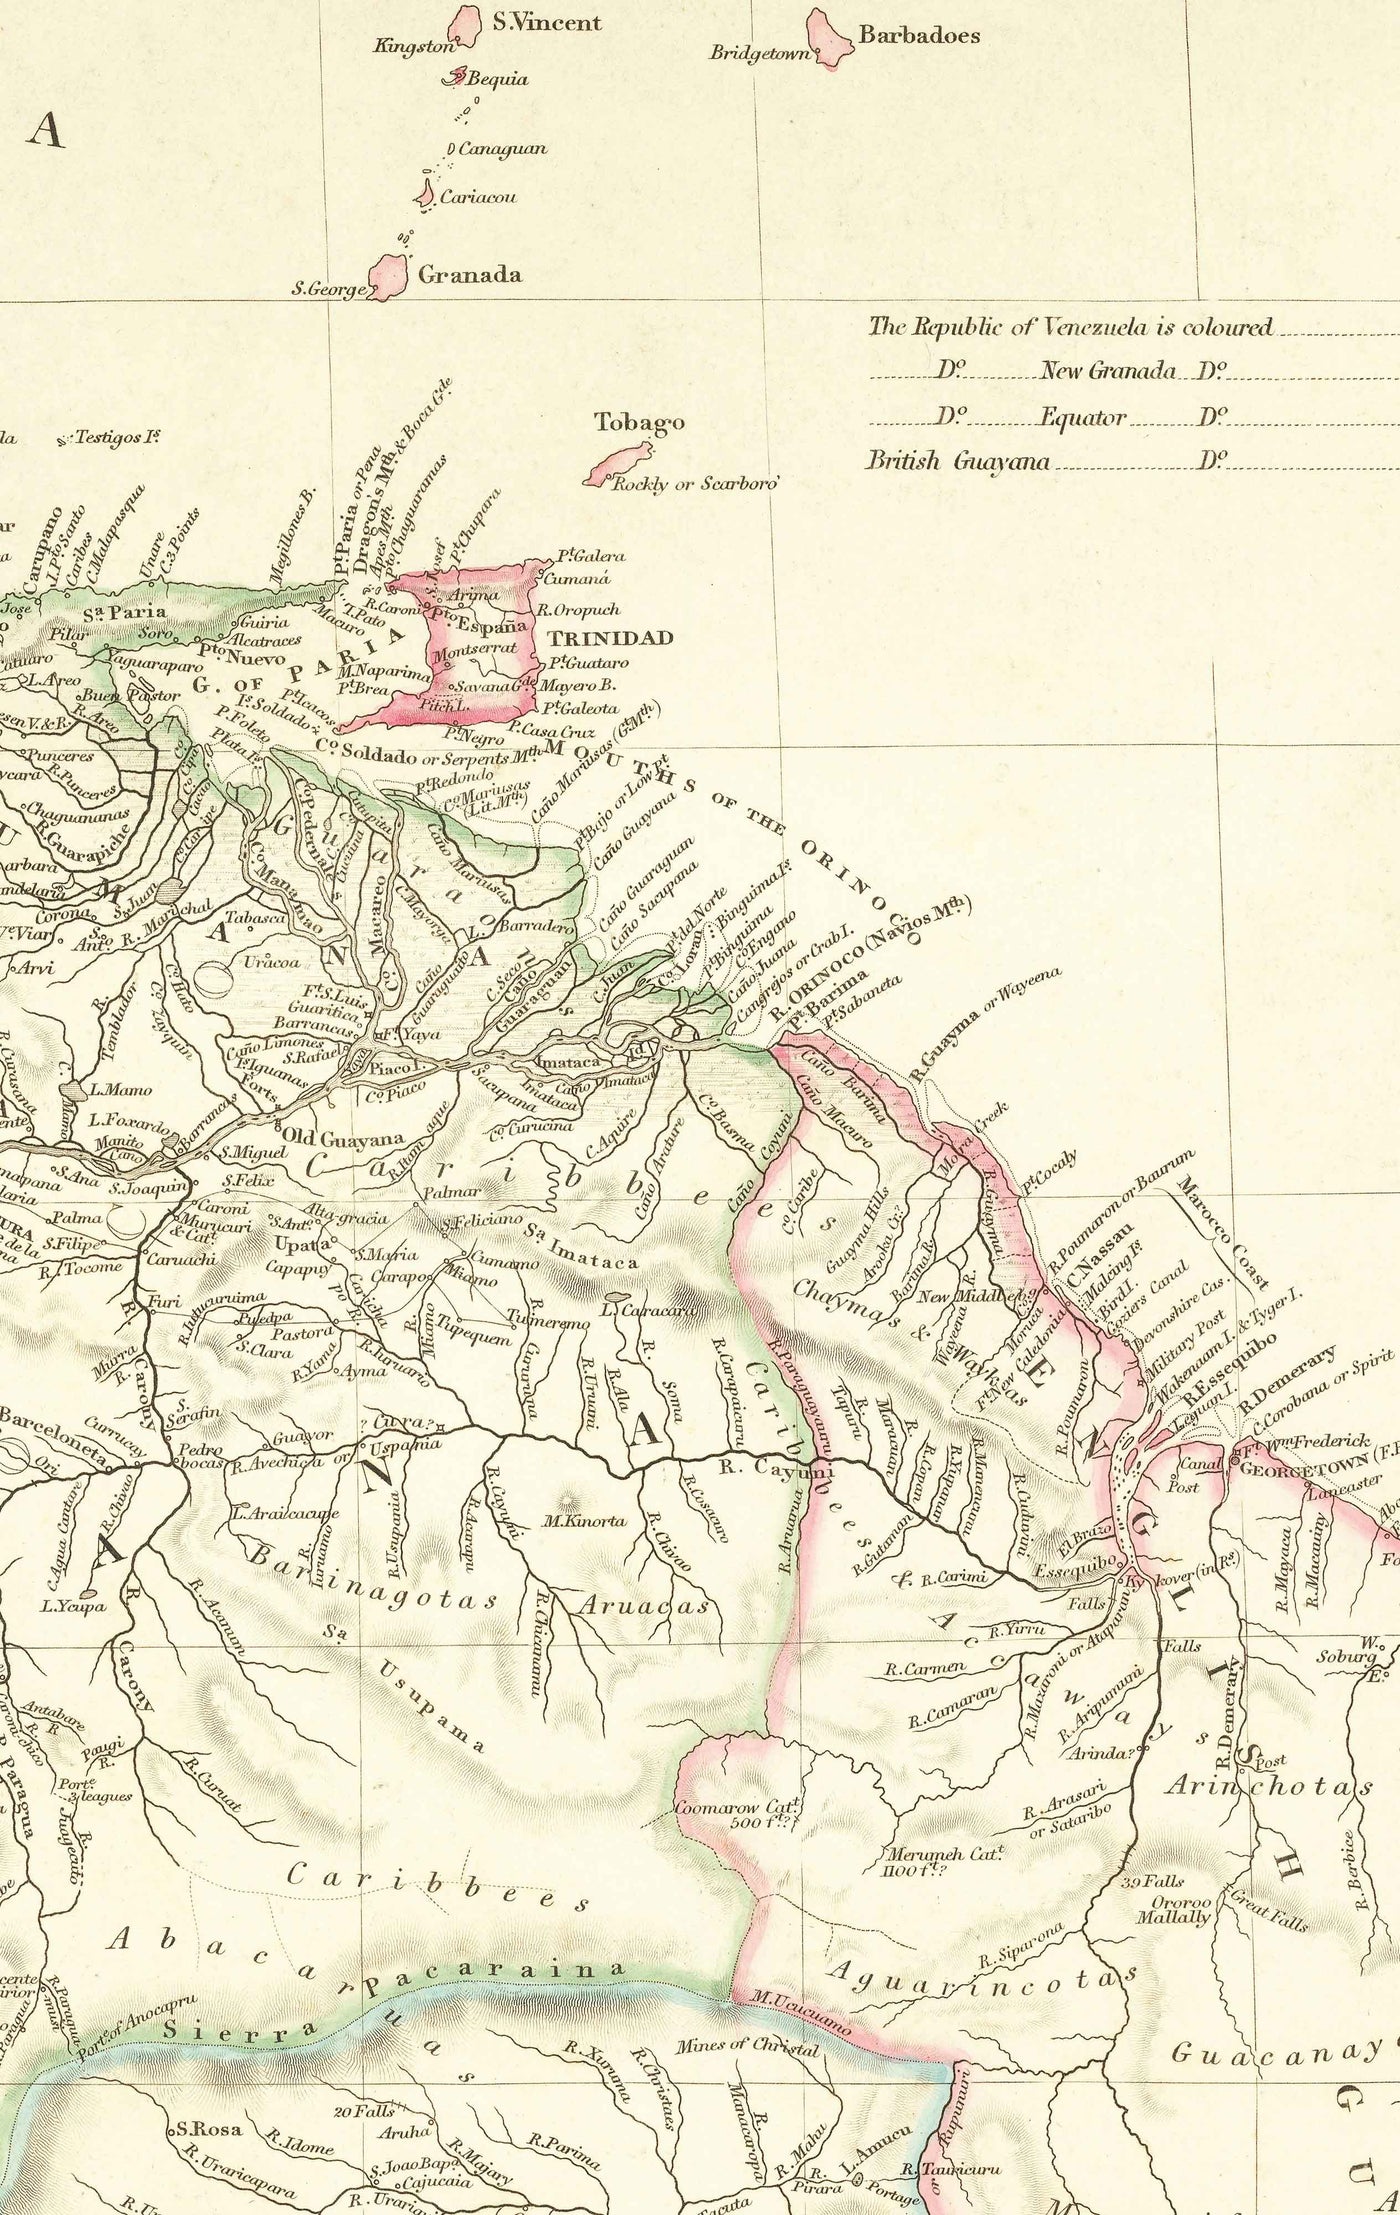 Mapa antiguo de Colombia, 1834 por Arrowsmith - Gran Colombia, Venezuela, Ecuador, Perú, Caribe, Panamá